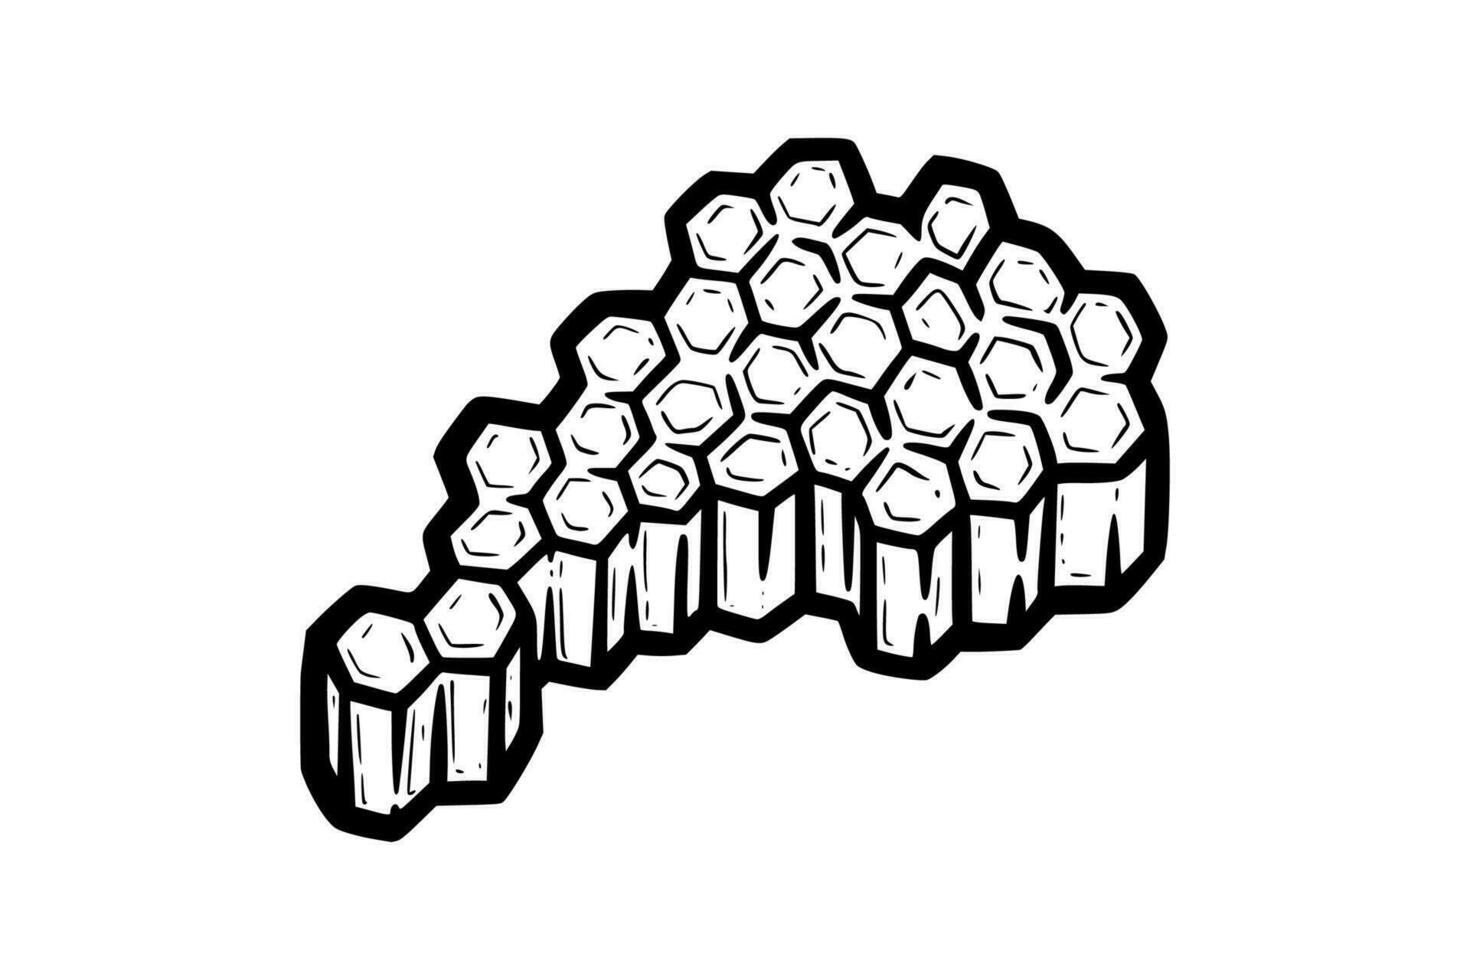 hoheycomb pieno di Miele. pezzo di pettine con esagonale cellule. monocromatico vettore illustrazione